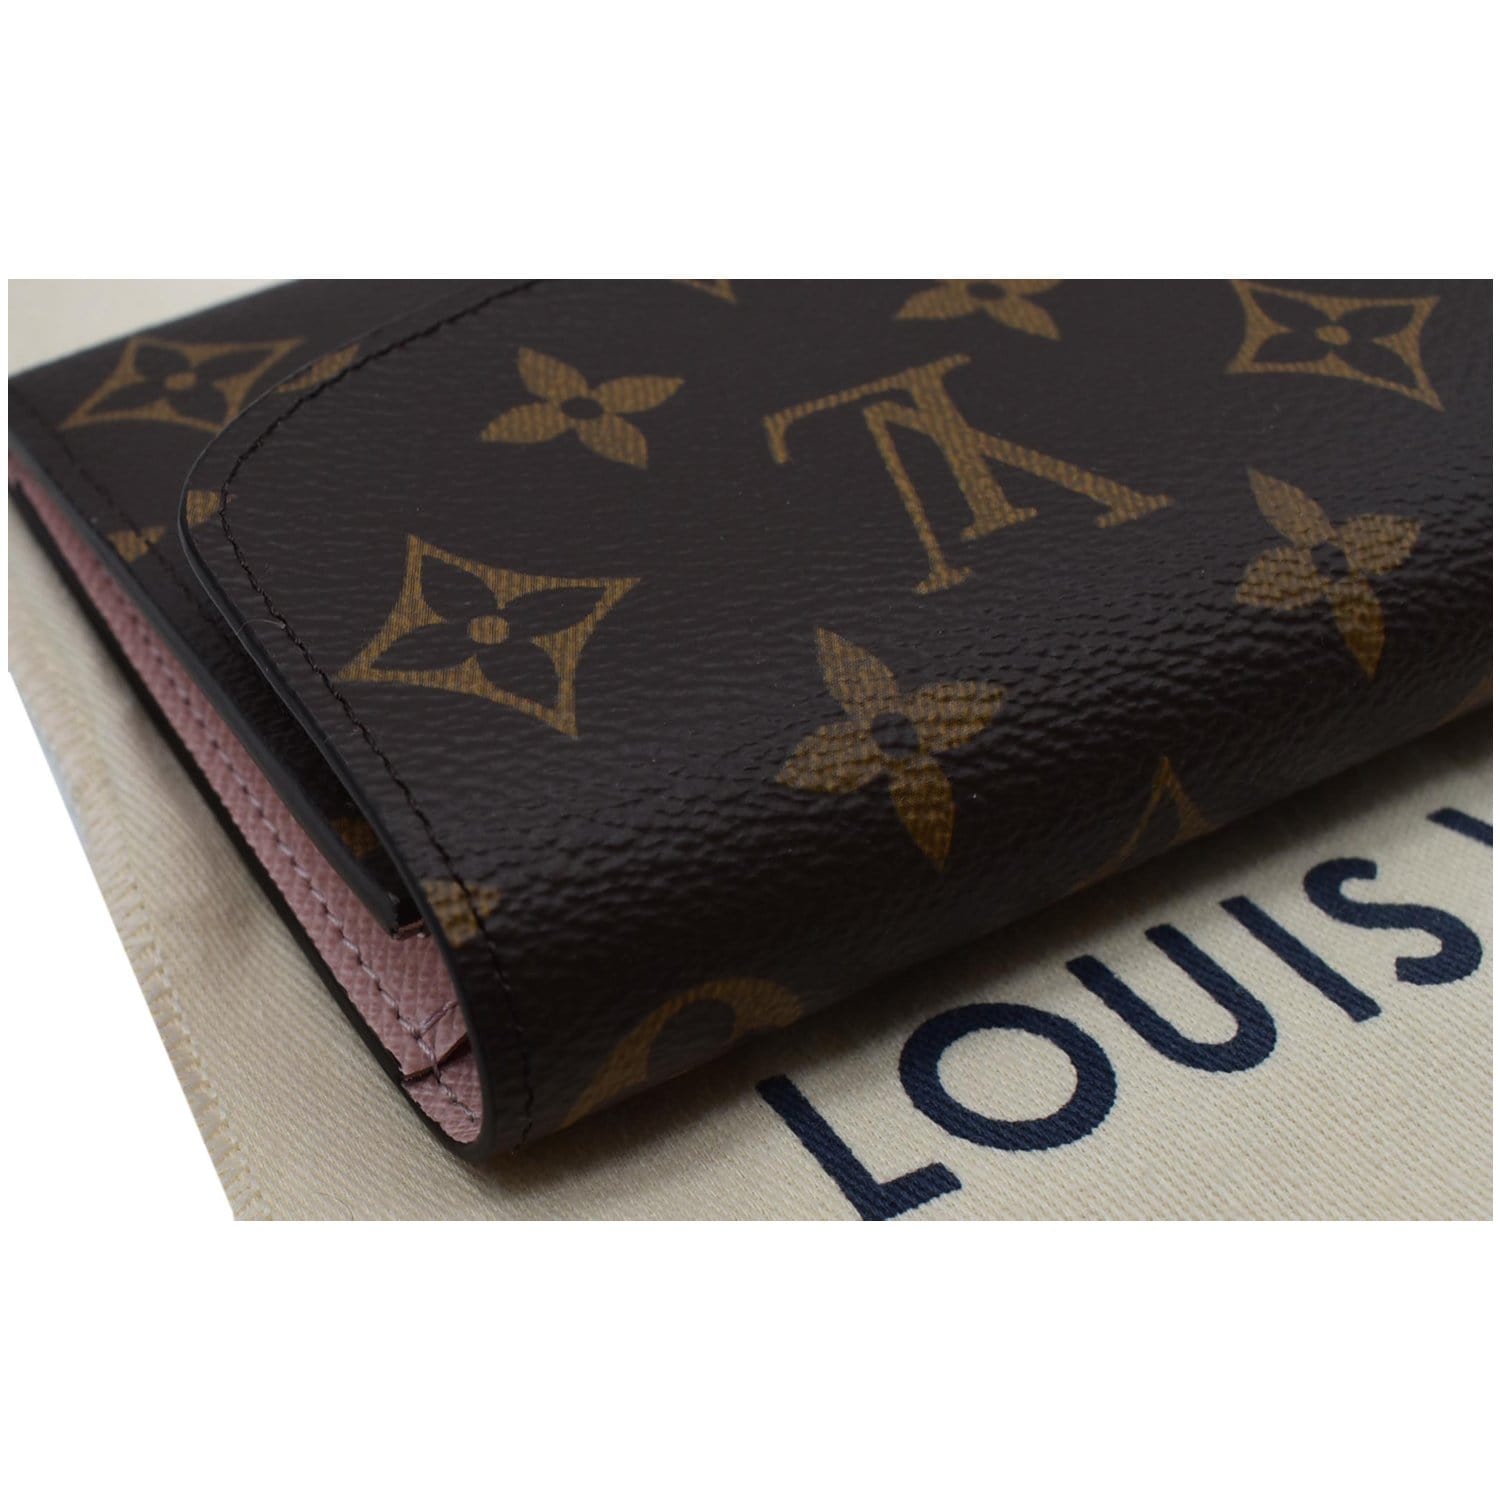 Louis Vuitton Wallet Emilie Damier Azur Rose Ballerine Interior - US